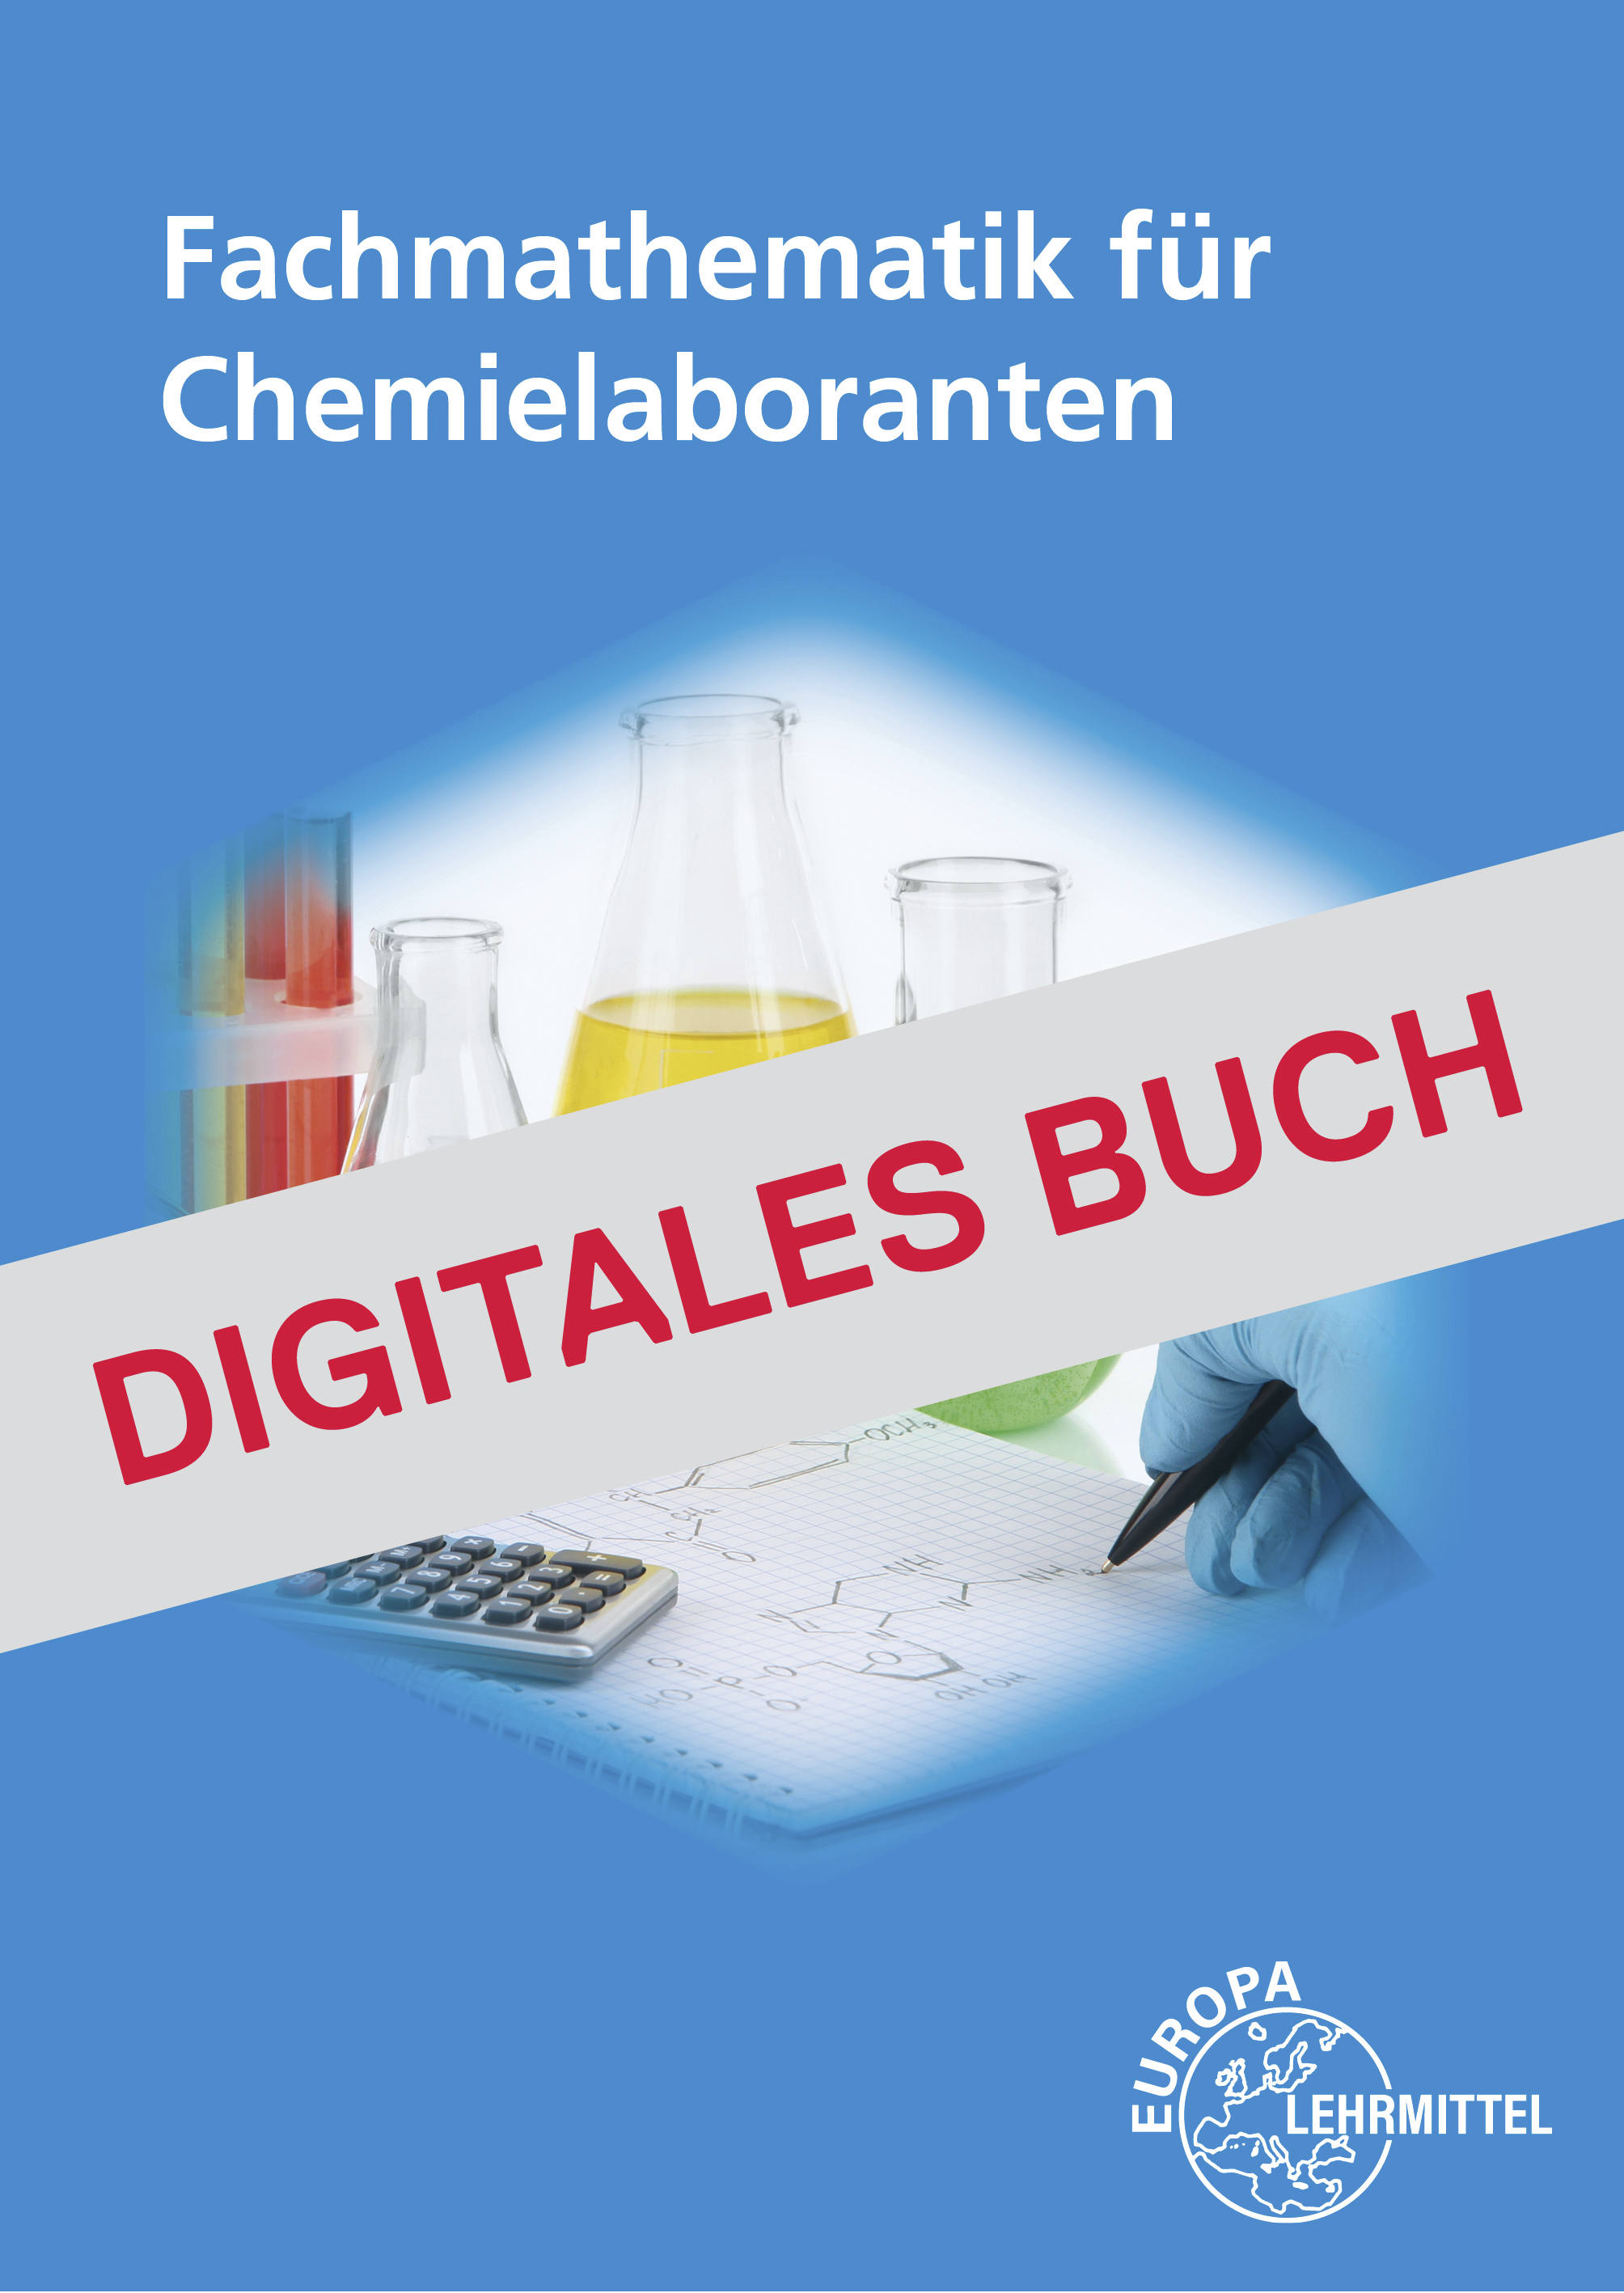 Fachmathematik für Chemielaboranten - Digitales Buch